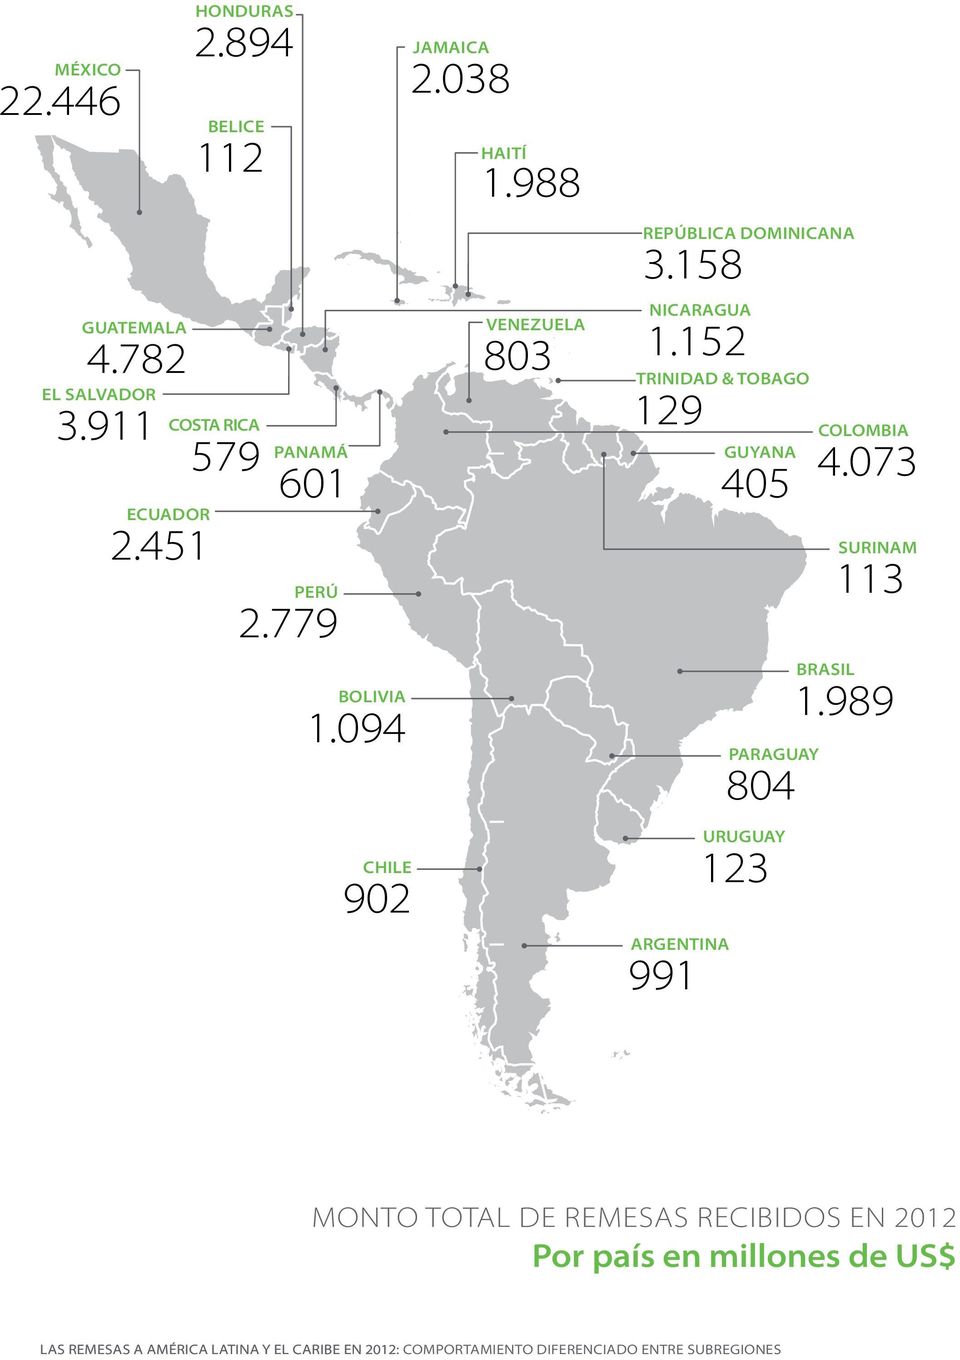 158 Nicaragua 1.152 Trinidad & Tobago 129 Argentina 991 Guyana 405 Paraguay 804 Uruguay 123 colombia 4.